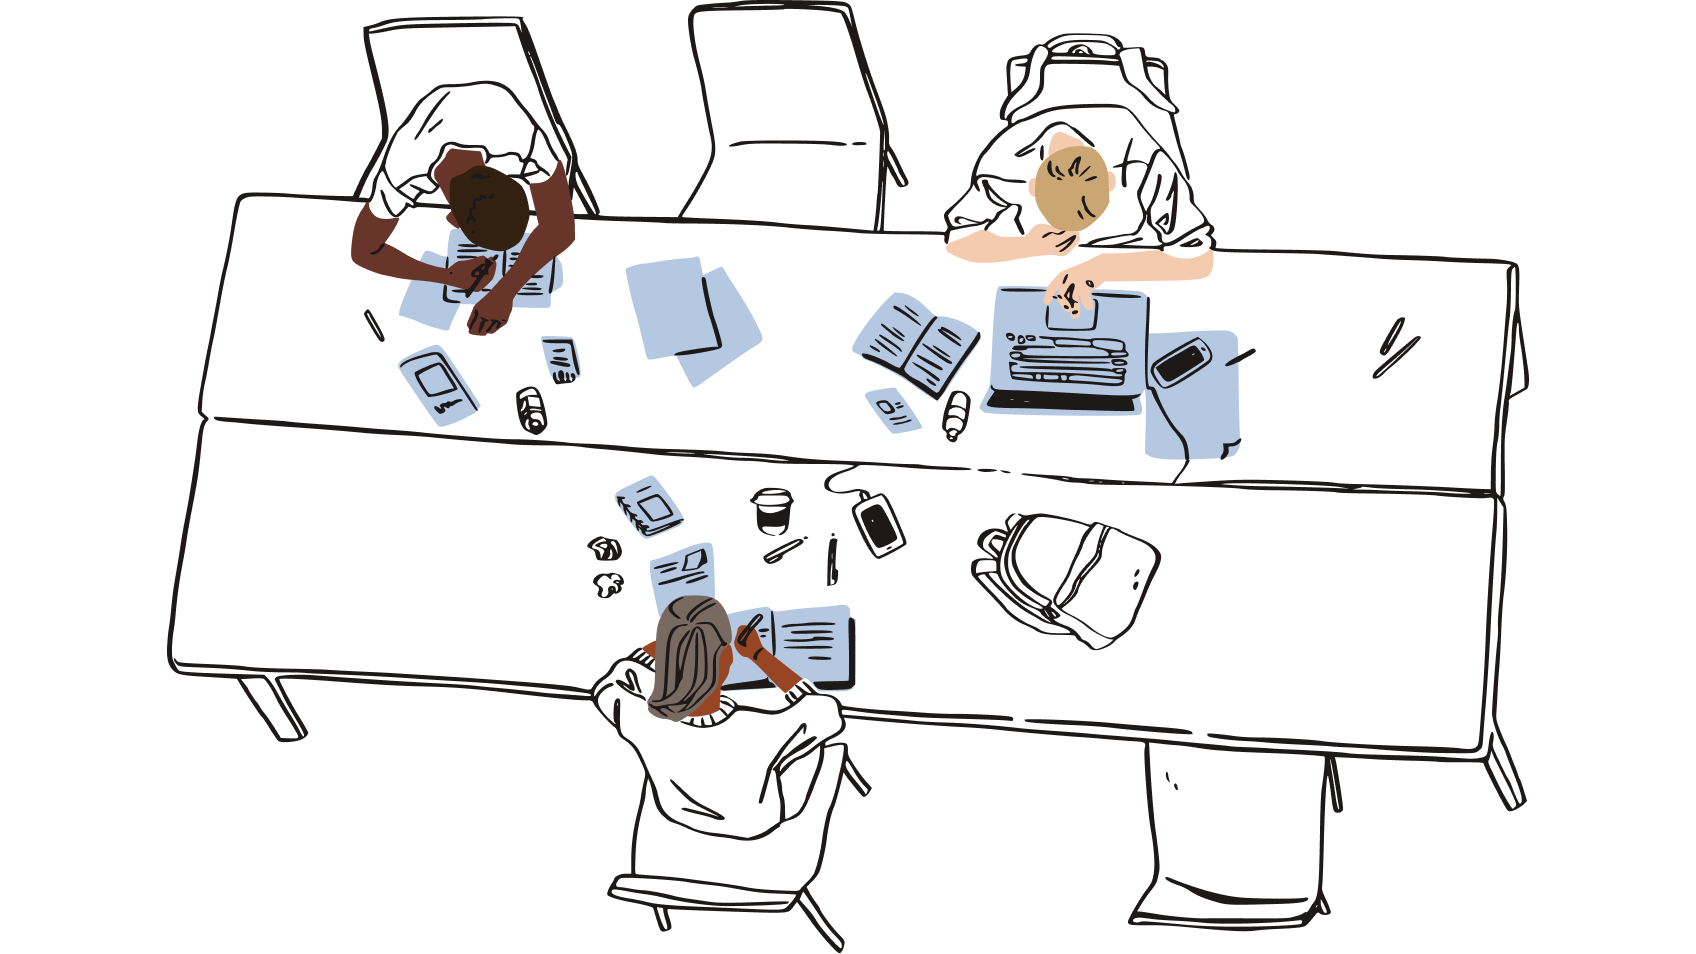 Immagine di un gruppo di persone sedute in uno spazio di lavoro condiviso e circondate da ritagli di carta, che rappresenta il rischio di lasciare copie fisiche delle password vicino alla scrivania.